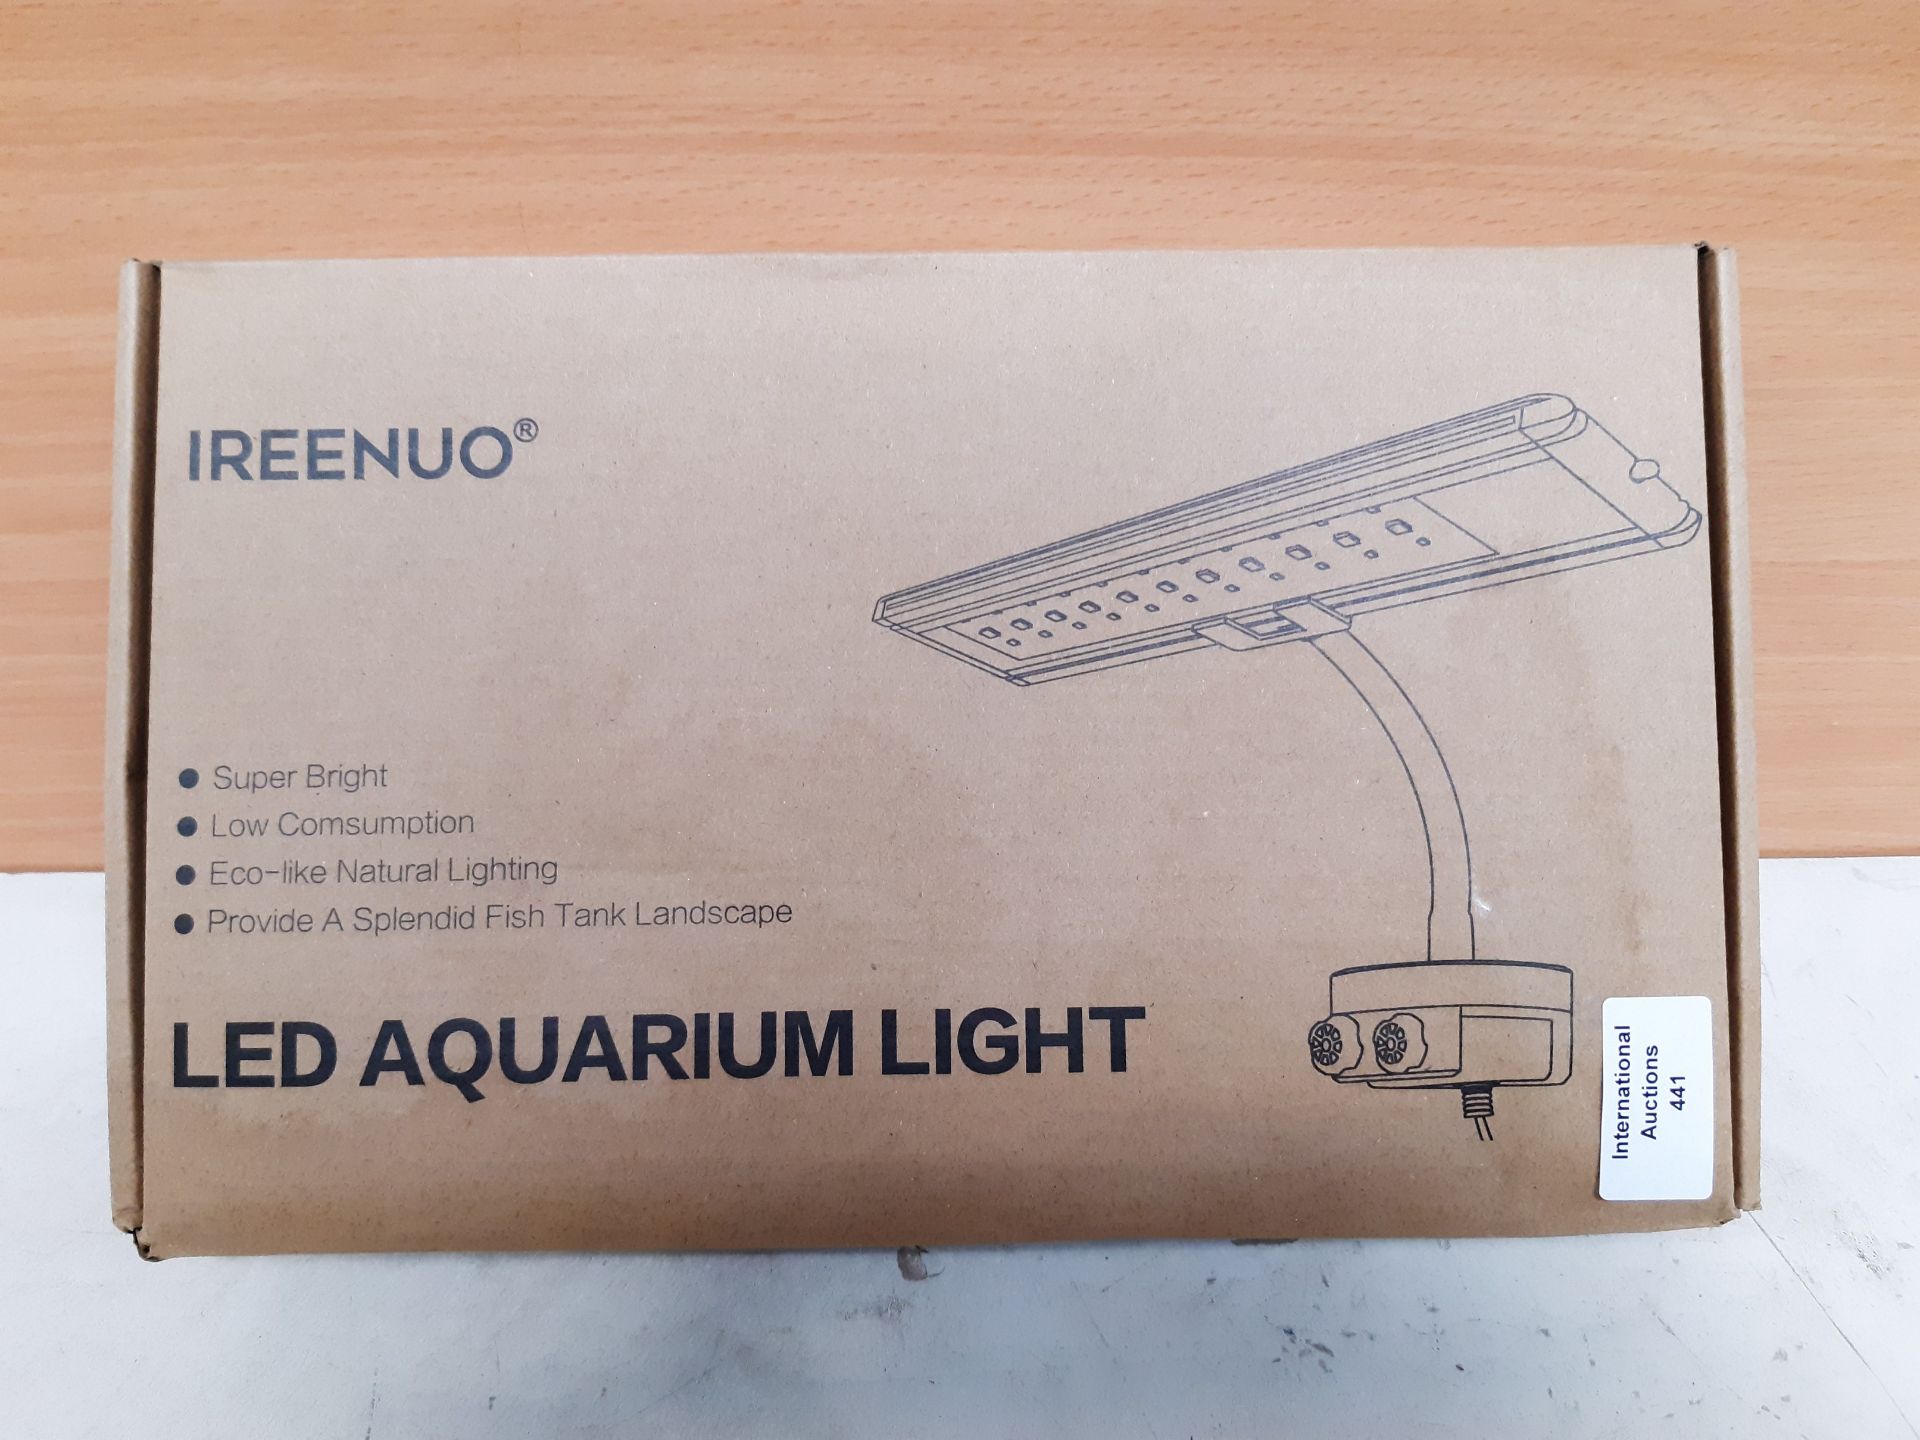 RRP £28.99 IREENUO LED Aquarium Light - Image 2 of 2